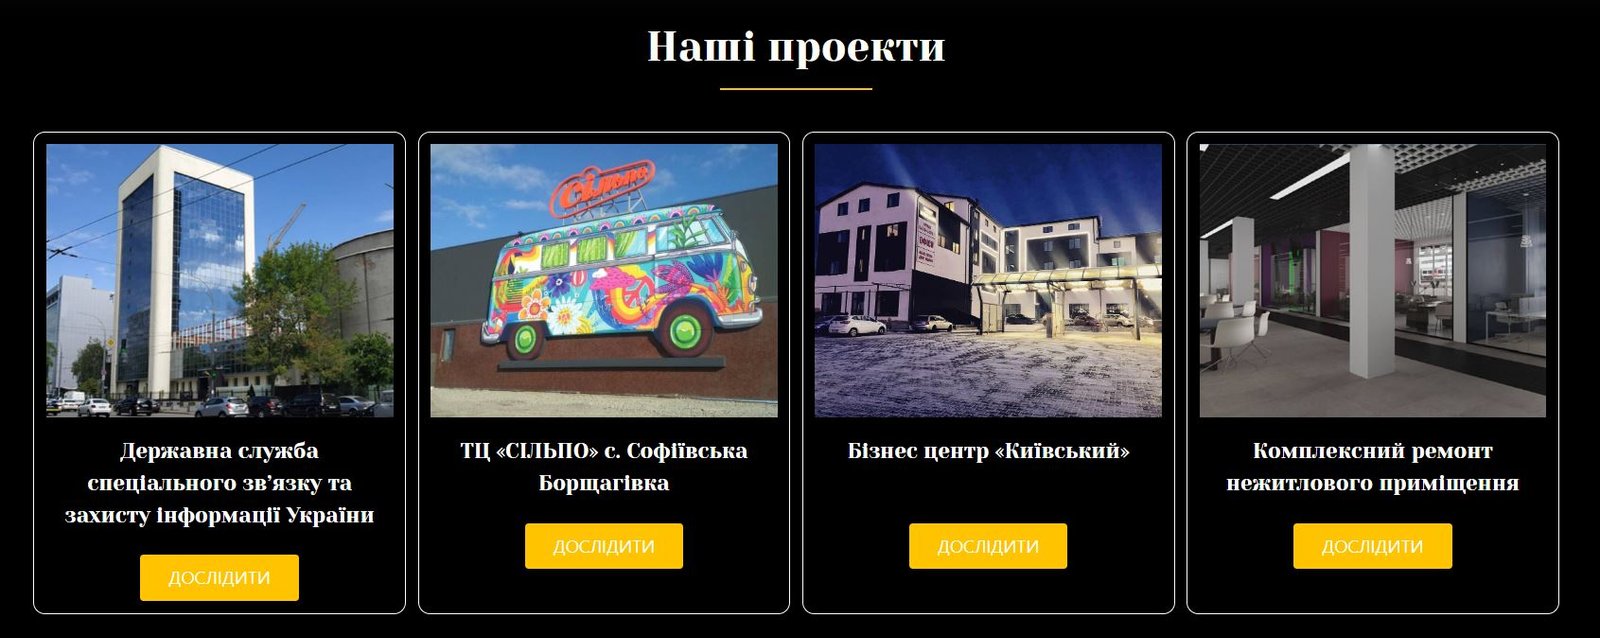 Послуги з будівництва під ключ в Києві